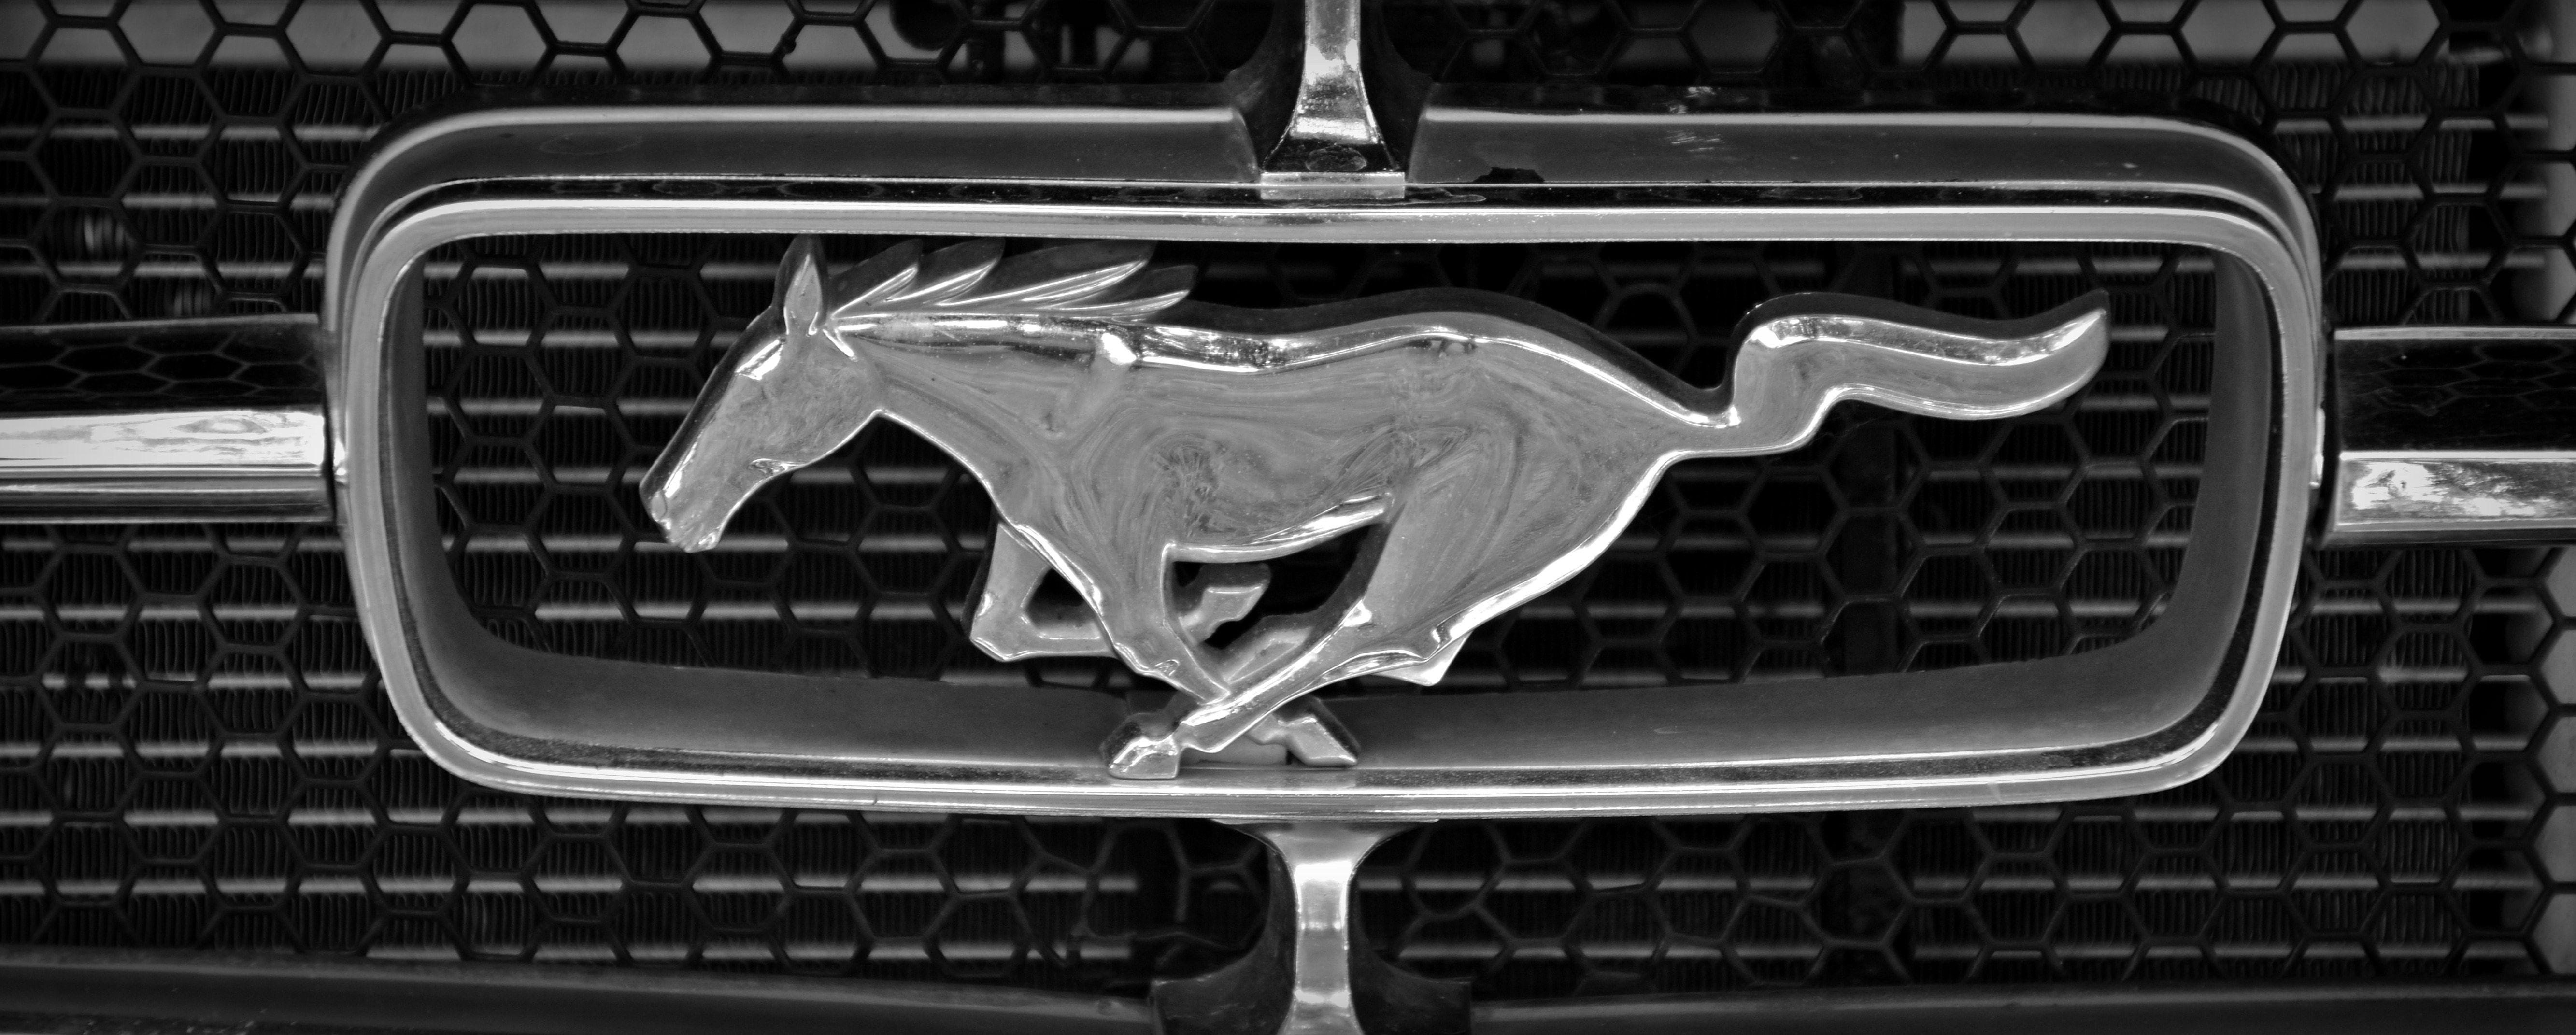 Black Ford Mustang Logo - ford mustang logo free image | Peakpx